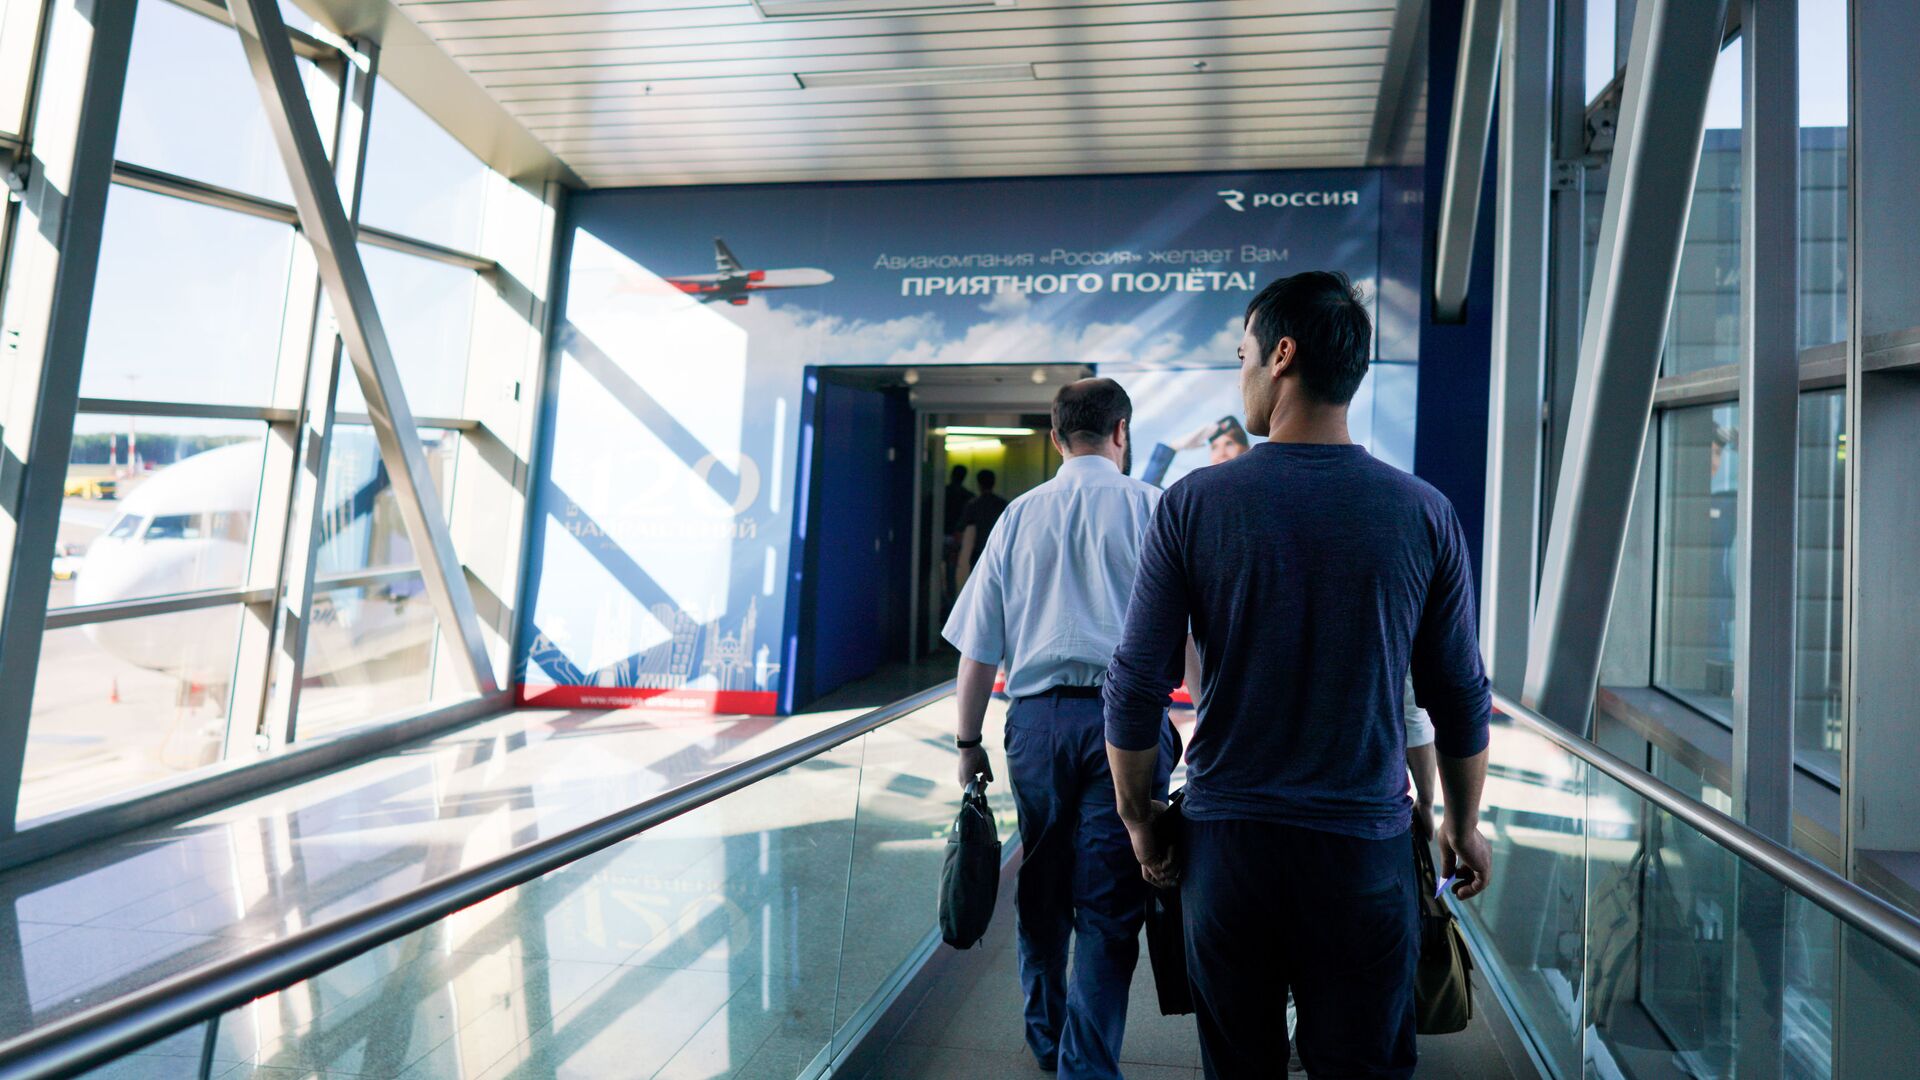 Граждане Узбекистана идут на посадку в терминале аэропорта Внуково  - Sputnik Таджикистан, 1920, 01.01.2022